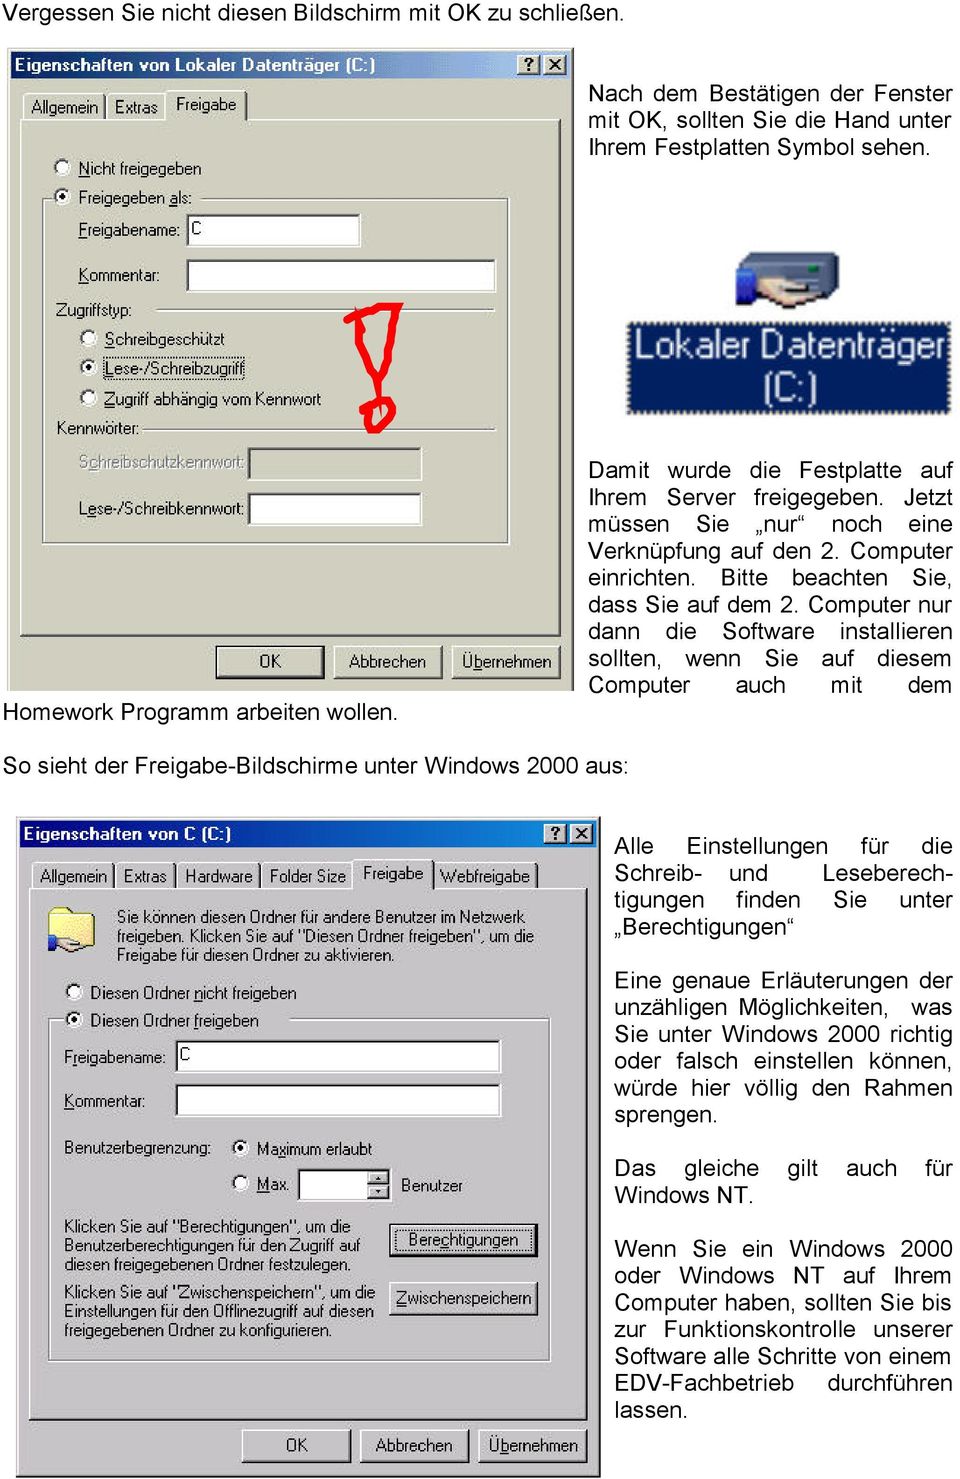 Computer nur dann die Software installieren sollten, wenn Sie auf diesem Computer auch mit dem So sieht der Freigabe-Bildschirme unter Windows 2000 aus: Alle Einstellungen für die Schreib- und